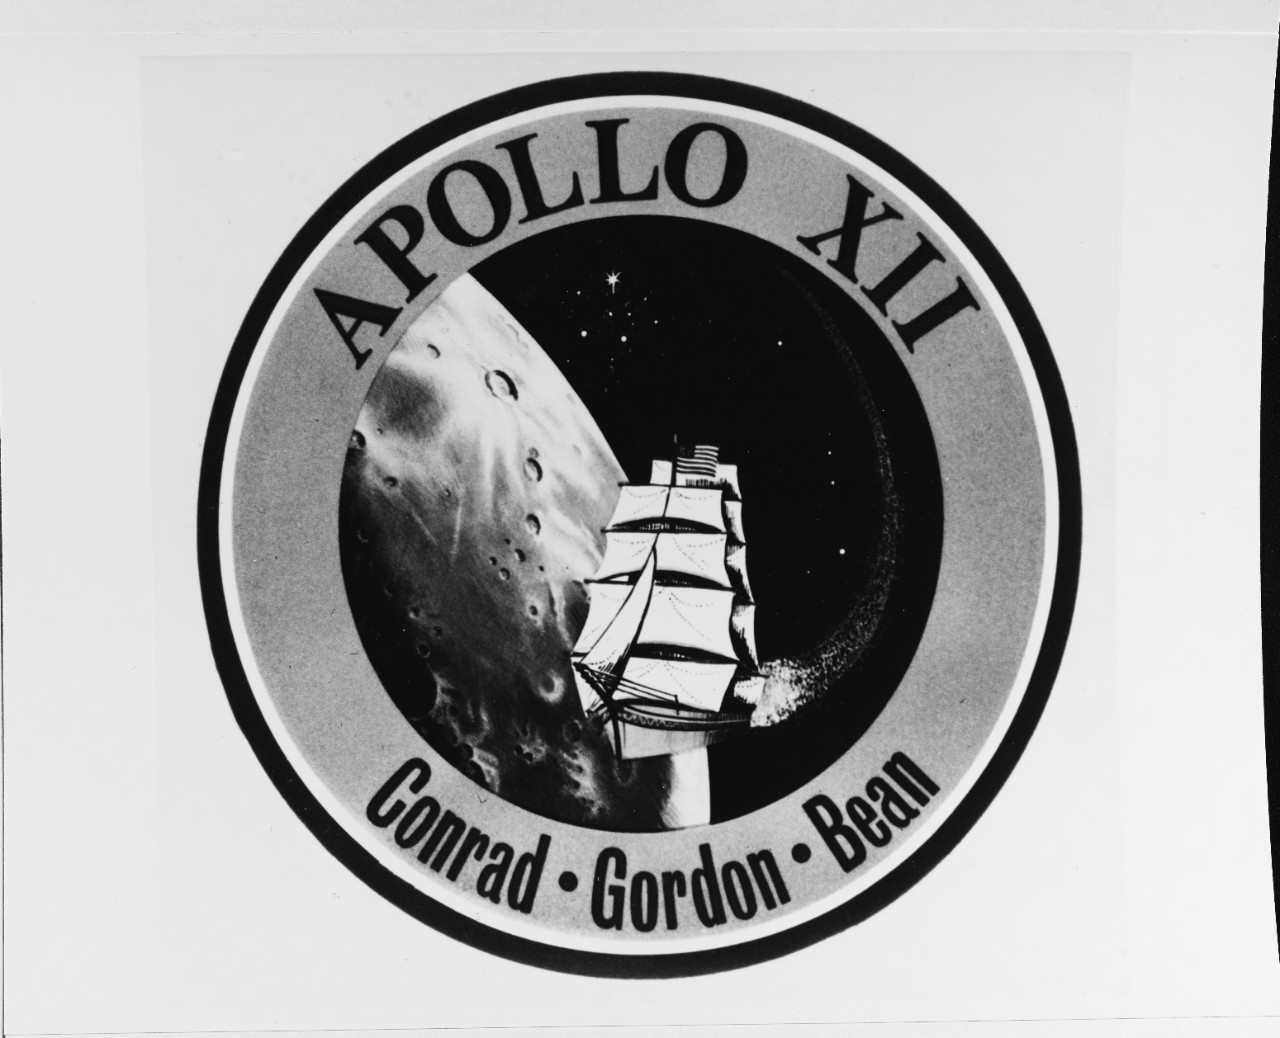 Insignia:  APOLLO XII, moon flight of November 1969.